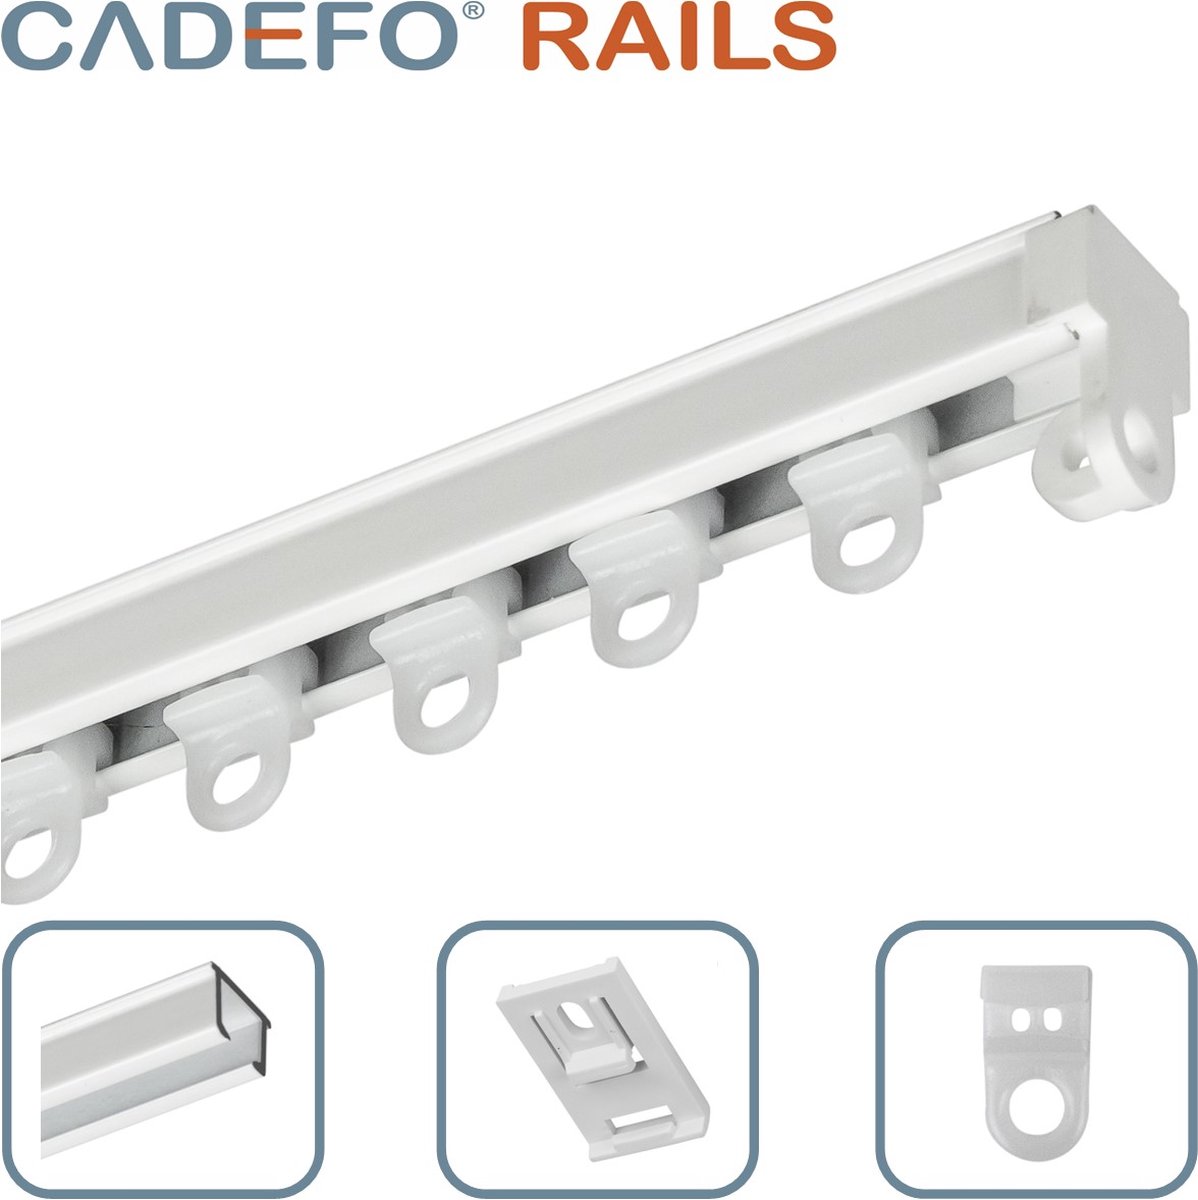 CADEFO RAILS (351 - 400 cm) Gordijnrails - Compleet op maat! - UIT 1 STUK - Leverbaar tot 6 meter - Plafondbevestiging - Lengte 379 cm